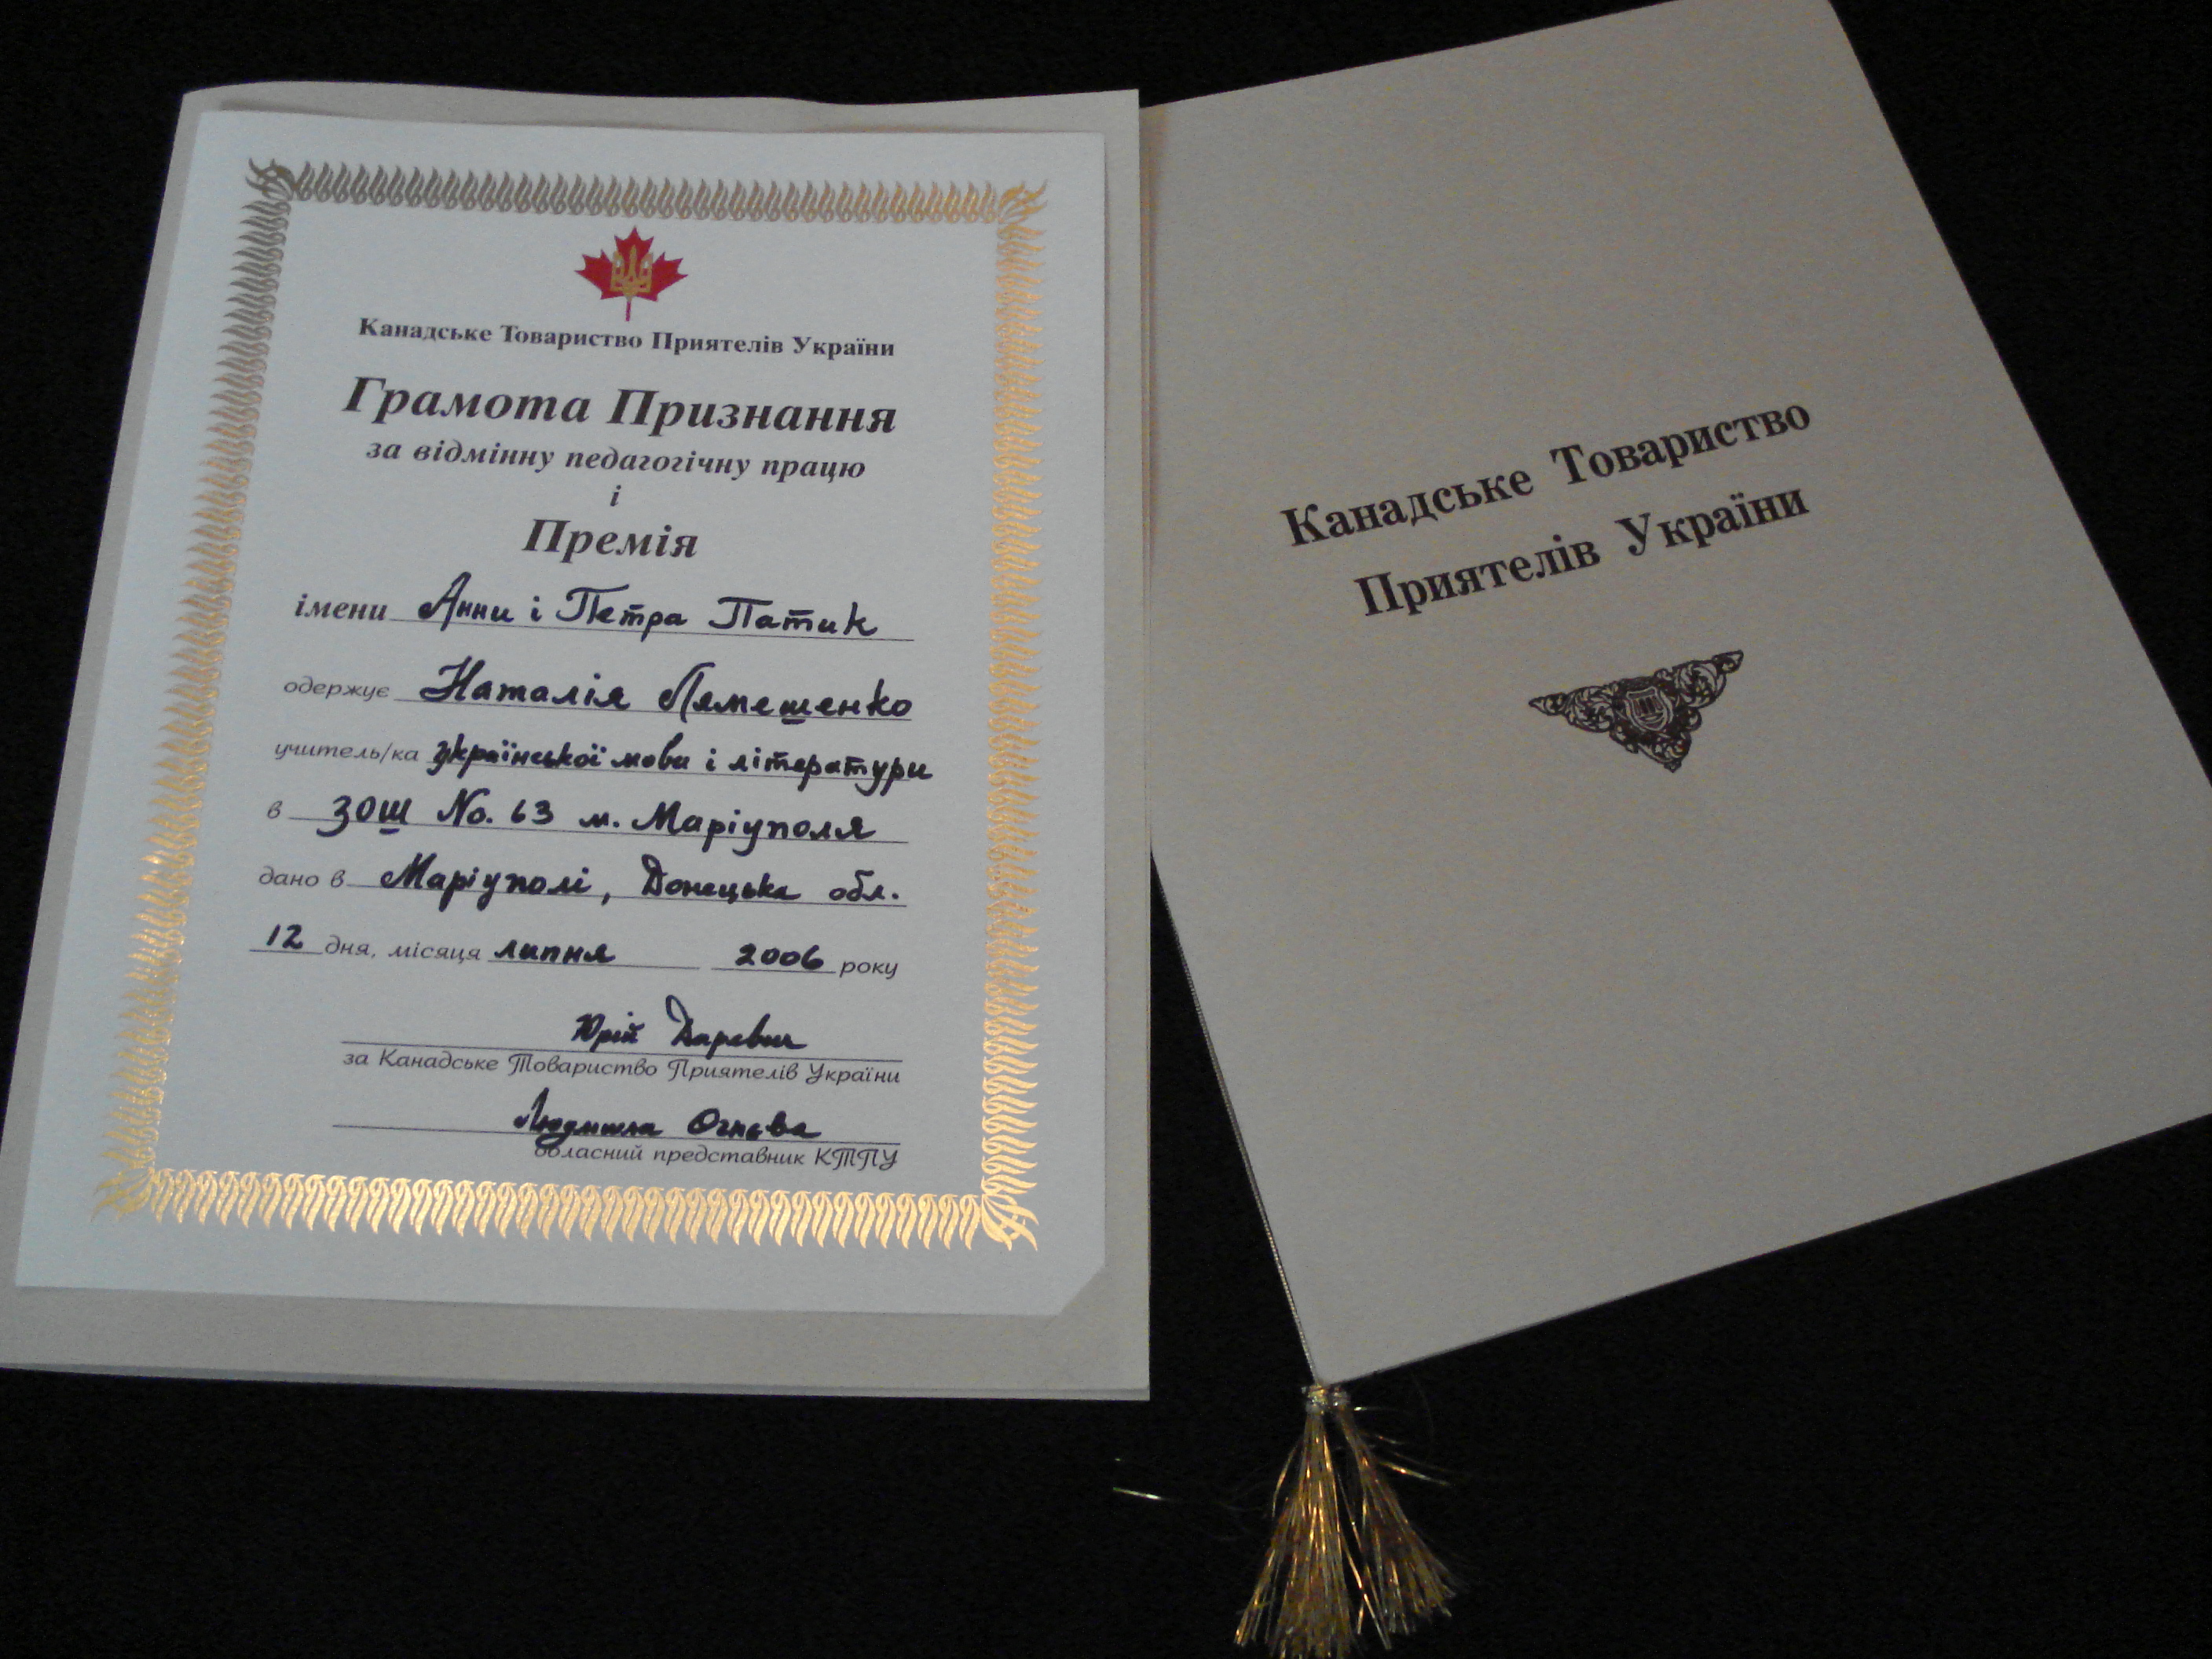 Canadian Friends of Ukraine Teachers Award Certificate